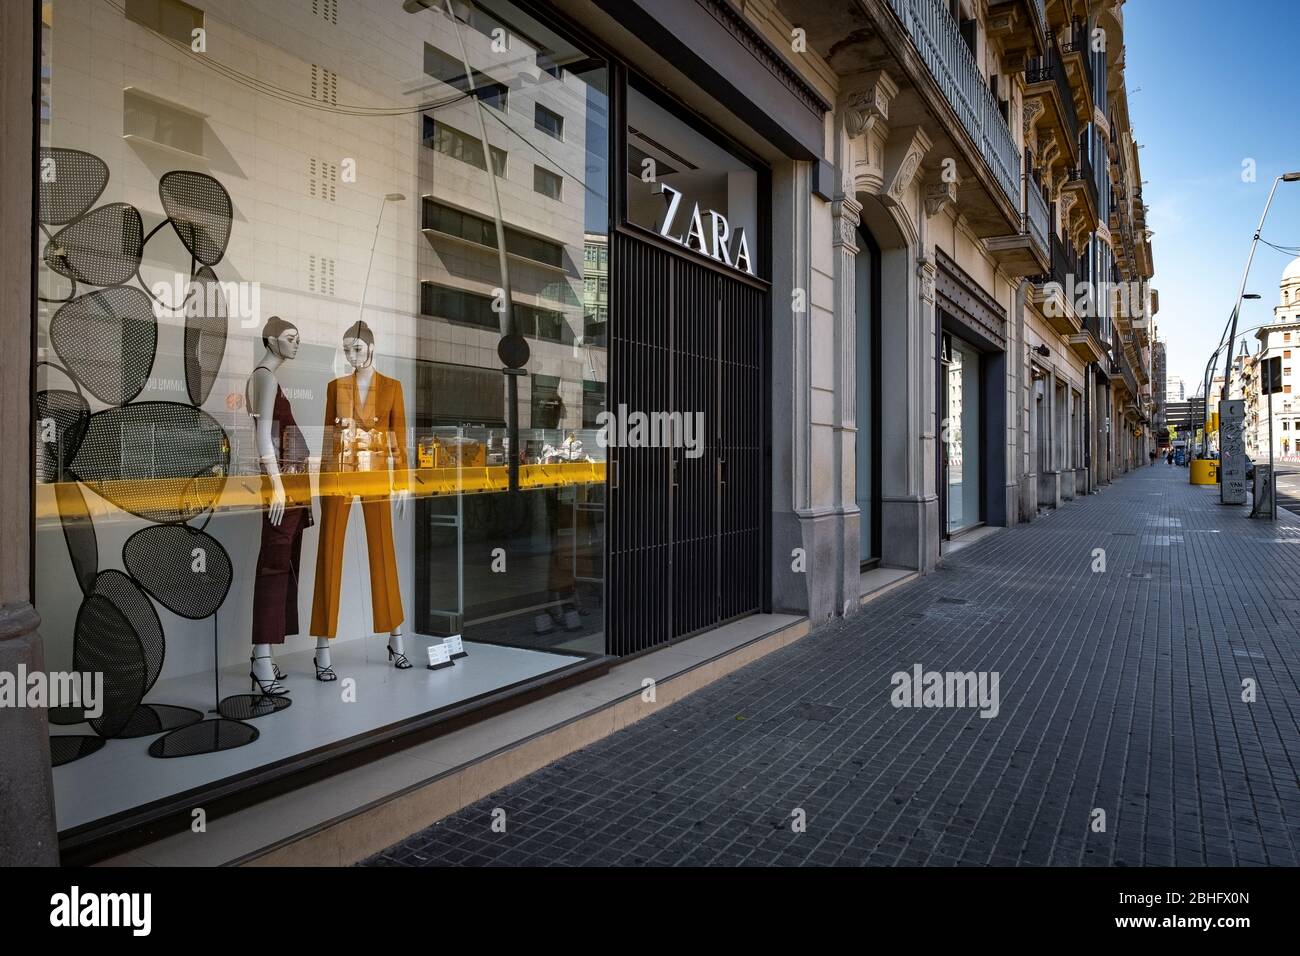 Una cadena de ropa cerrada de Zara vista en una calle vacía de Pelayo  durante la crisis del coronavirus.Barcelona enfrenta el día 42 de  confinamiento y distanciamiento social. Sólo los establecimientos  autorizados